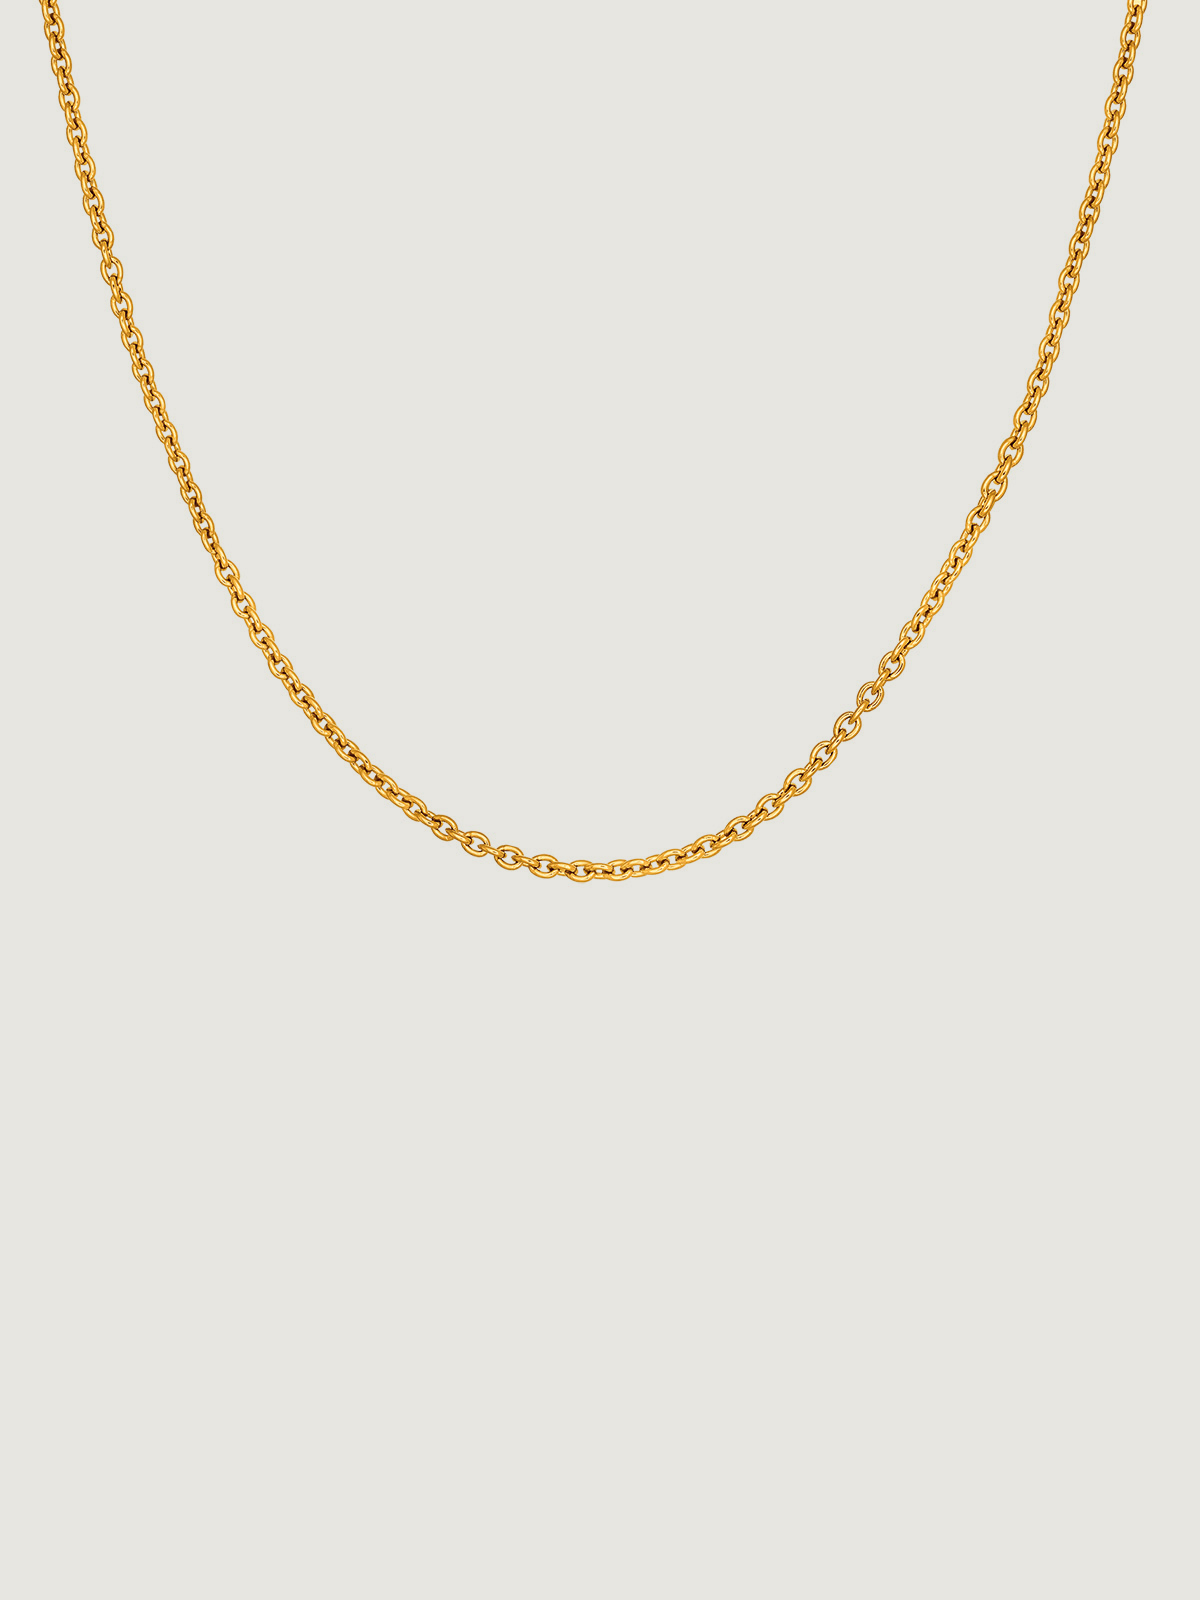 Cadena sencilla ajustable de plata 925 bañada en oro amarillo de 18 K